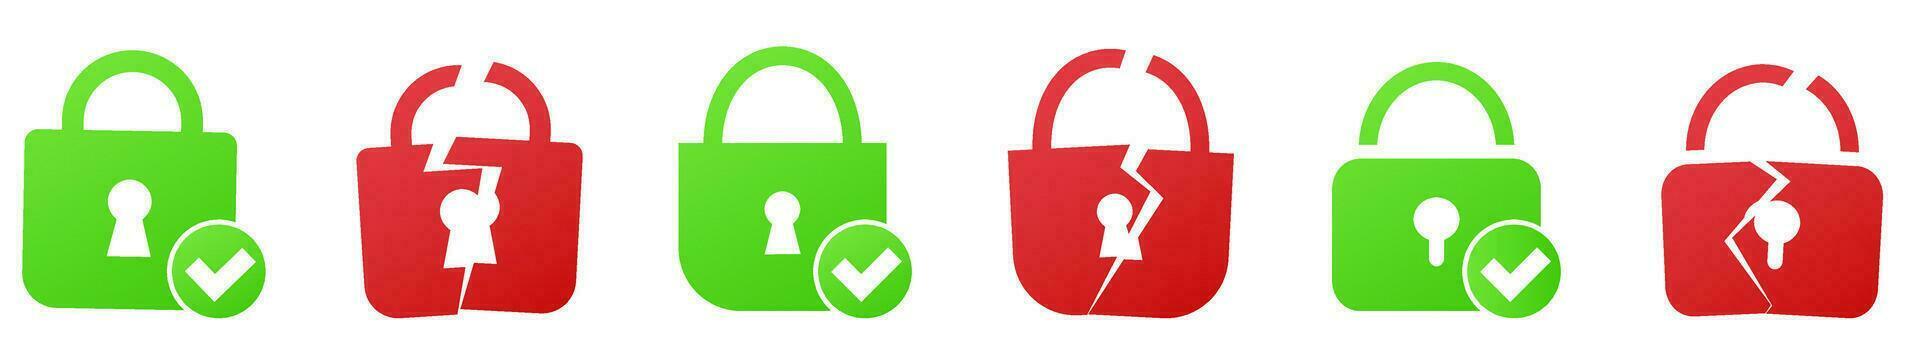 serratura protezione ssl https sicurezza protocollo. vettore